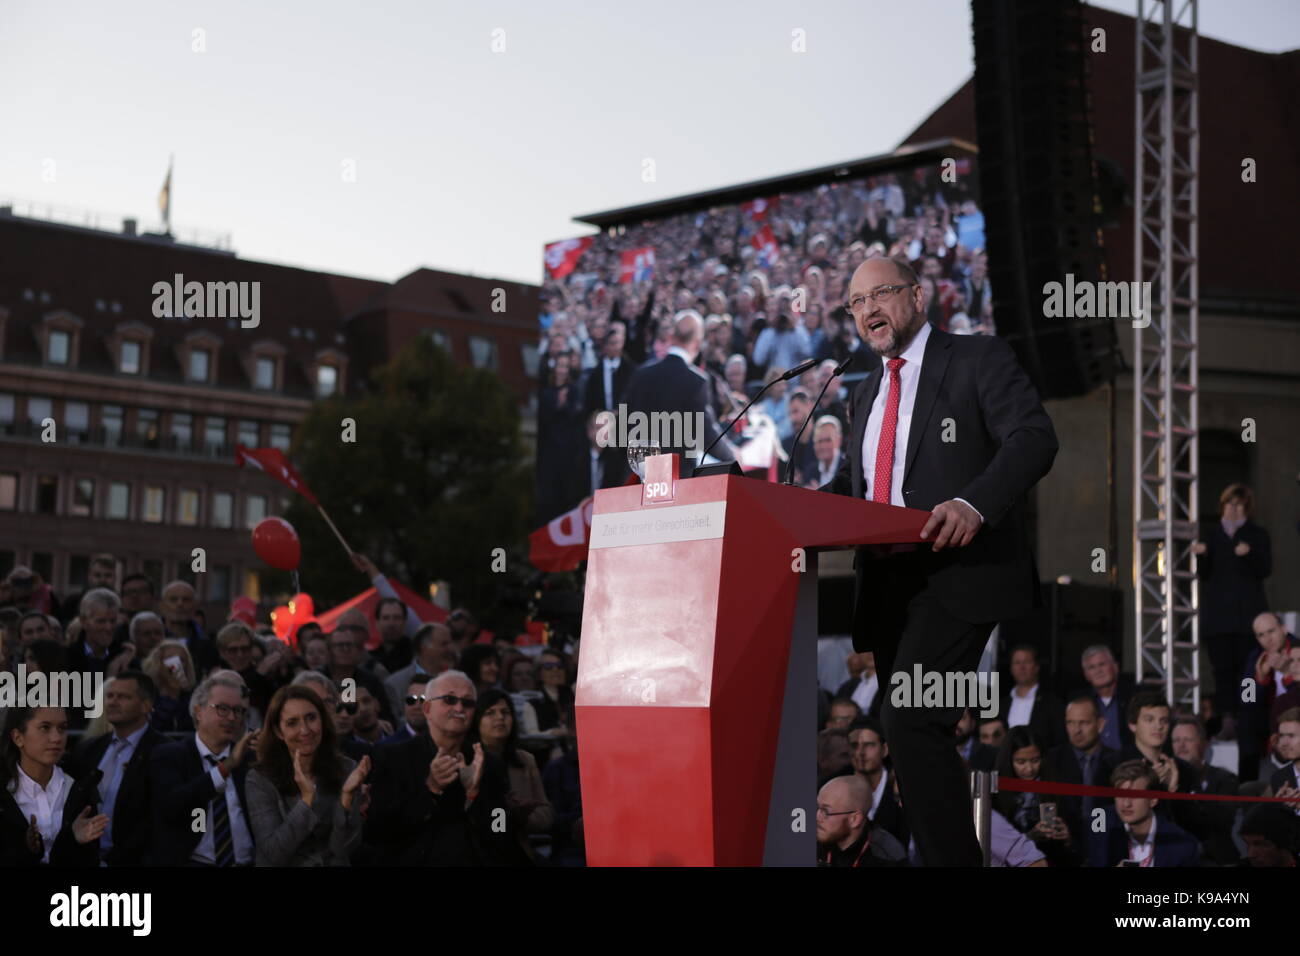 Berlino, Germania. Il 22 settembre, 2017. Martin Schulz affronta il rally. Il candidato per il tedesco Chancellorship della SPD (partito socialdemocratico tedesco) è stata il principale oratore ad un rally di grandi dimensioni nel centro di Berlino, due giorni prima delle elezioni tedesche. Credito: SOPA Immagini limitata/Alamy Live News Foto Stock